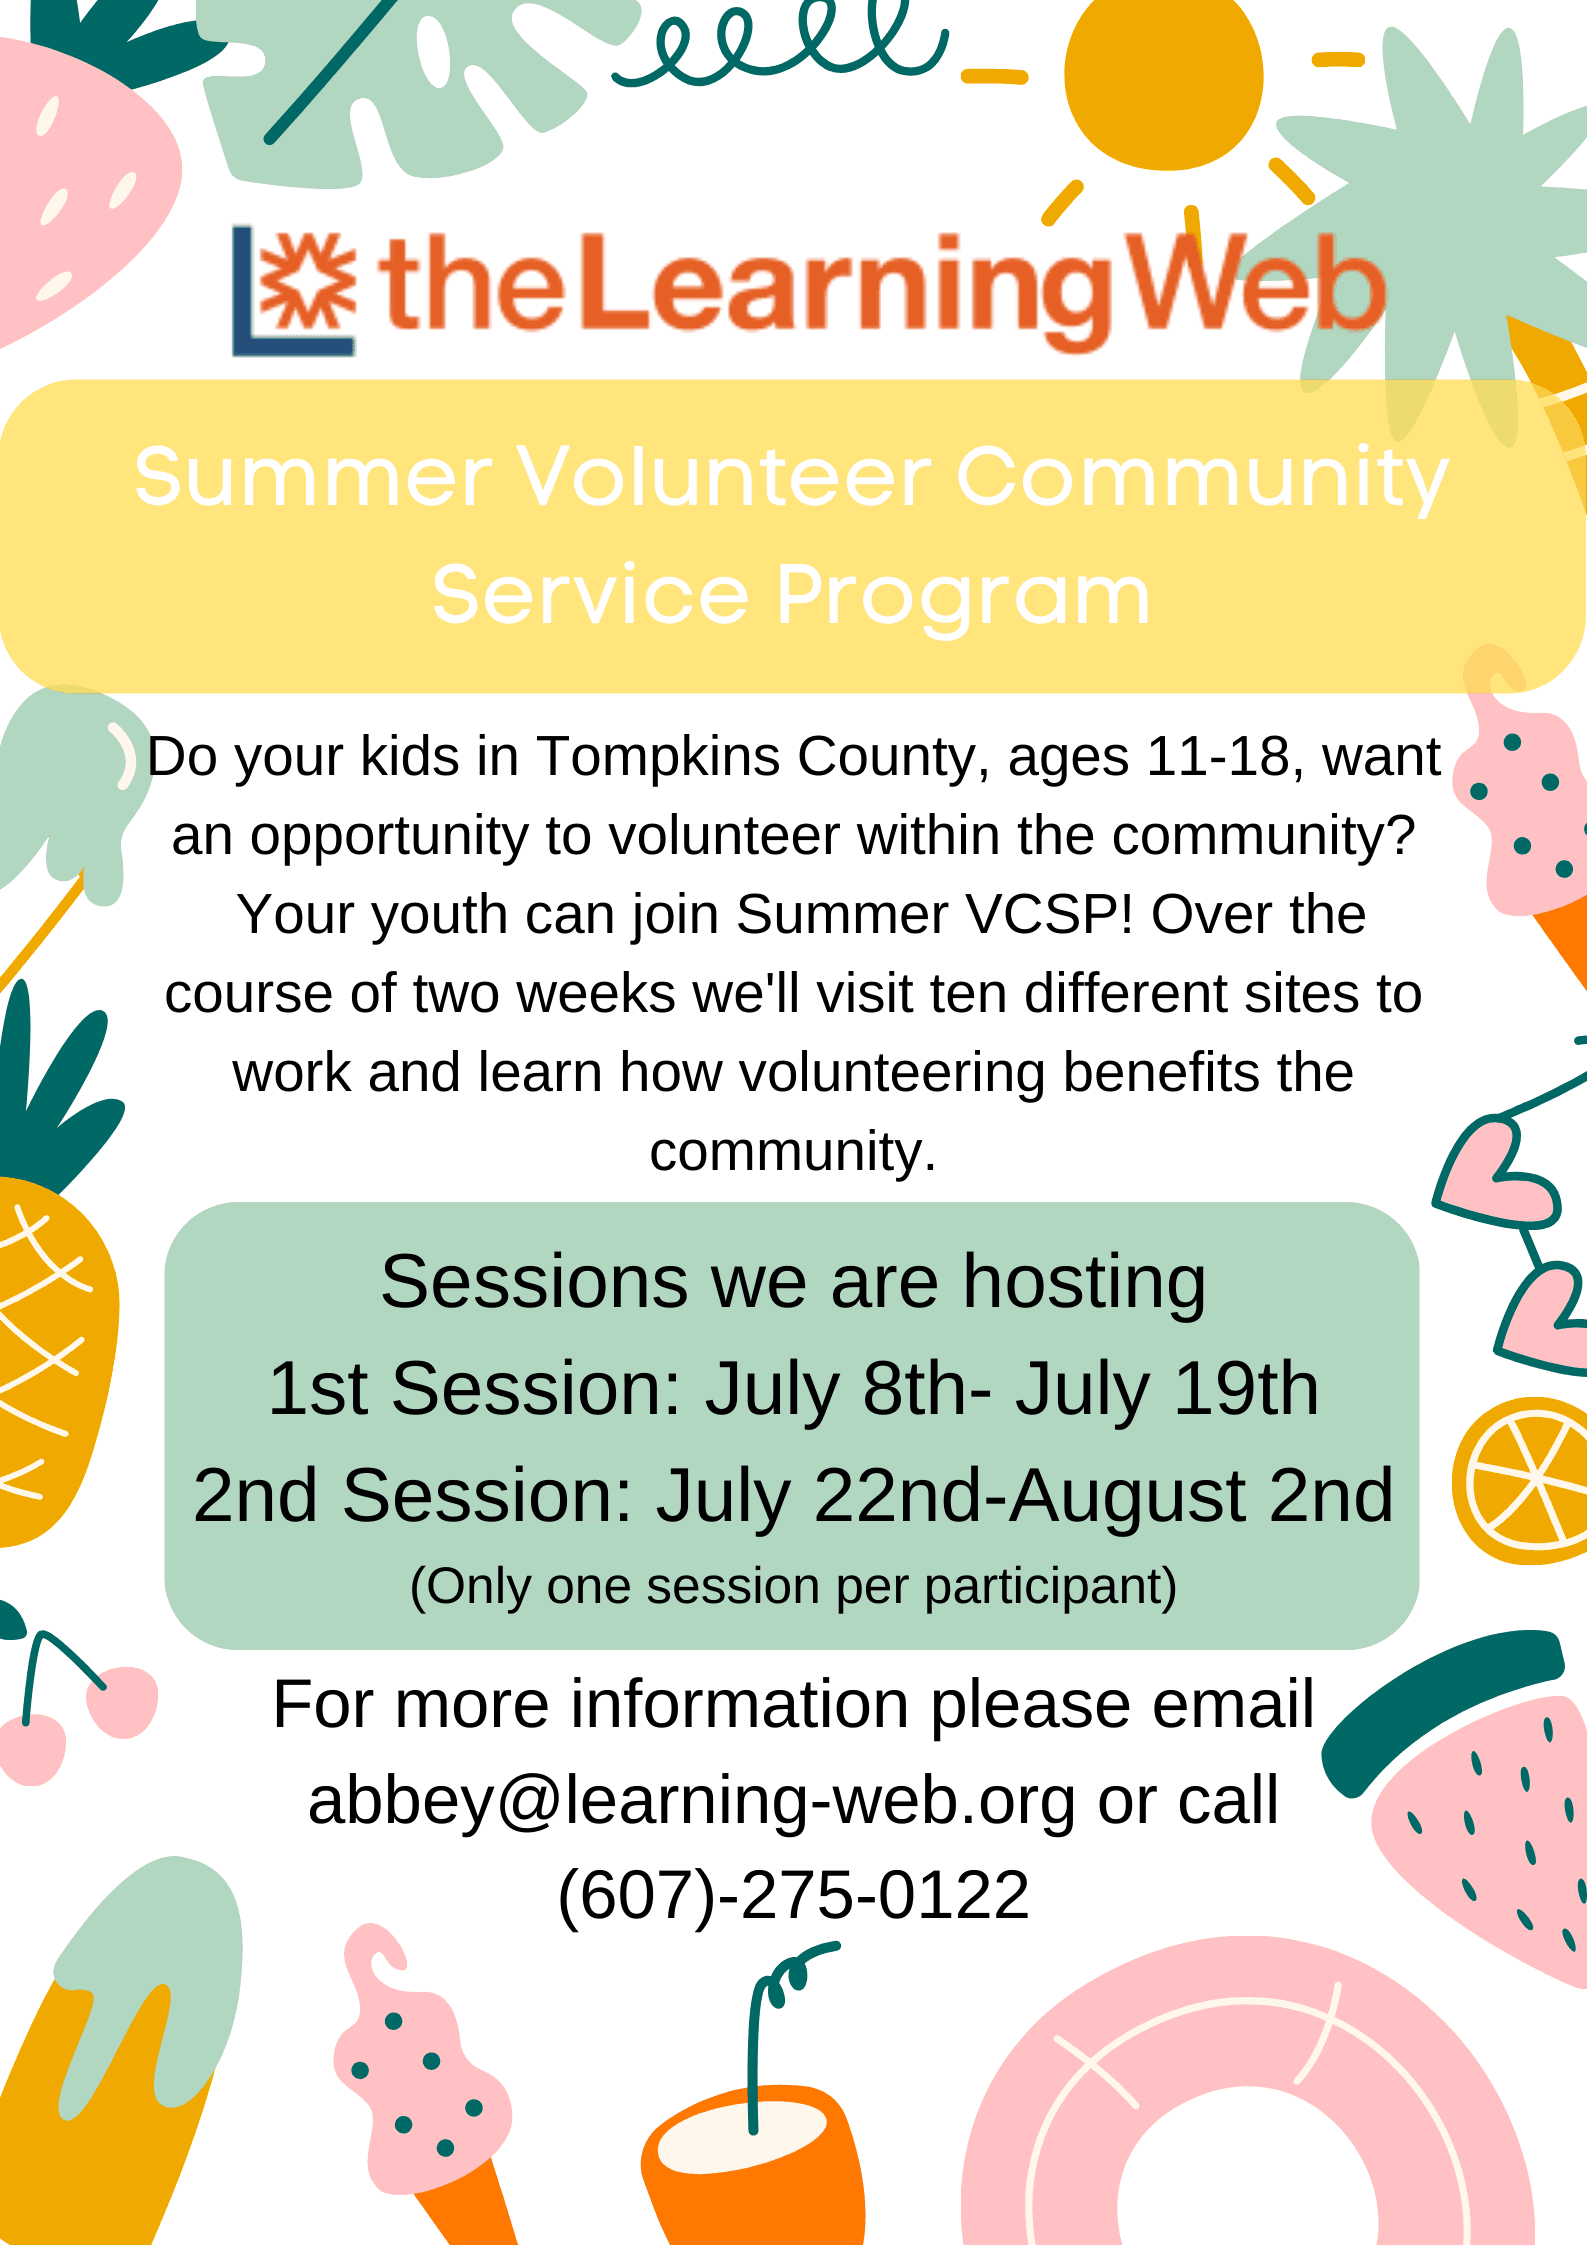 Summer Volunteer Community Service Program